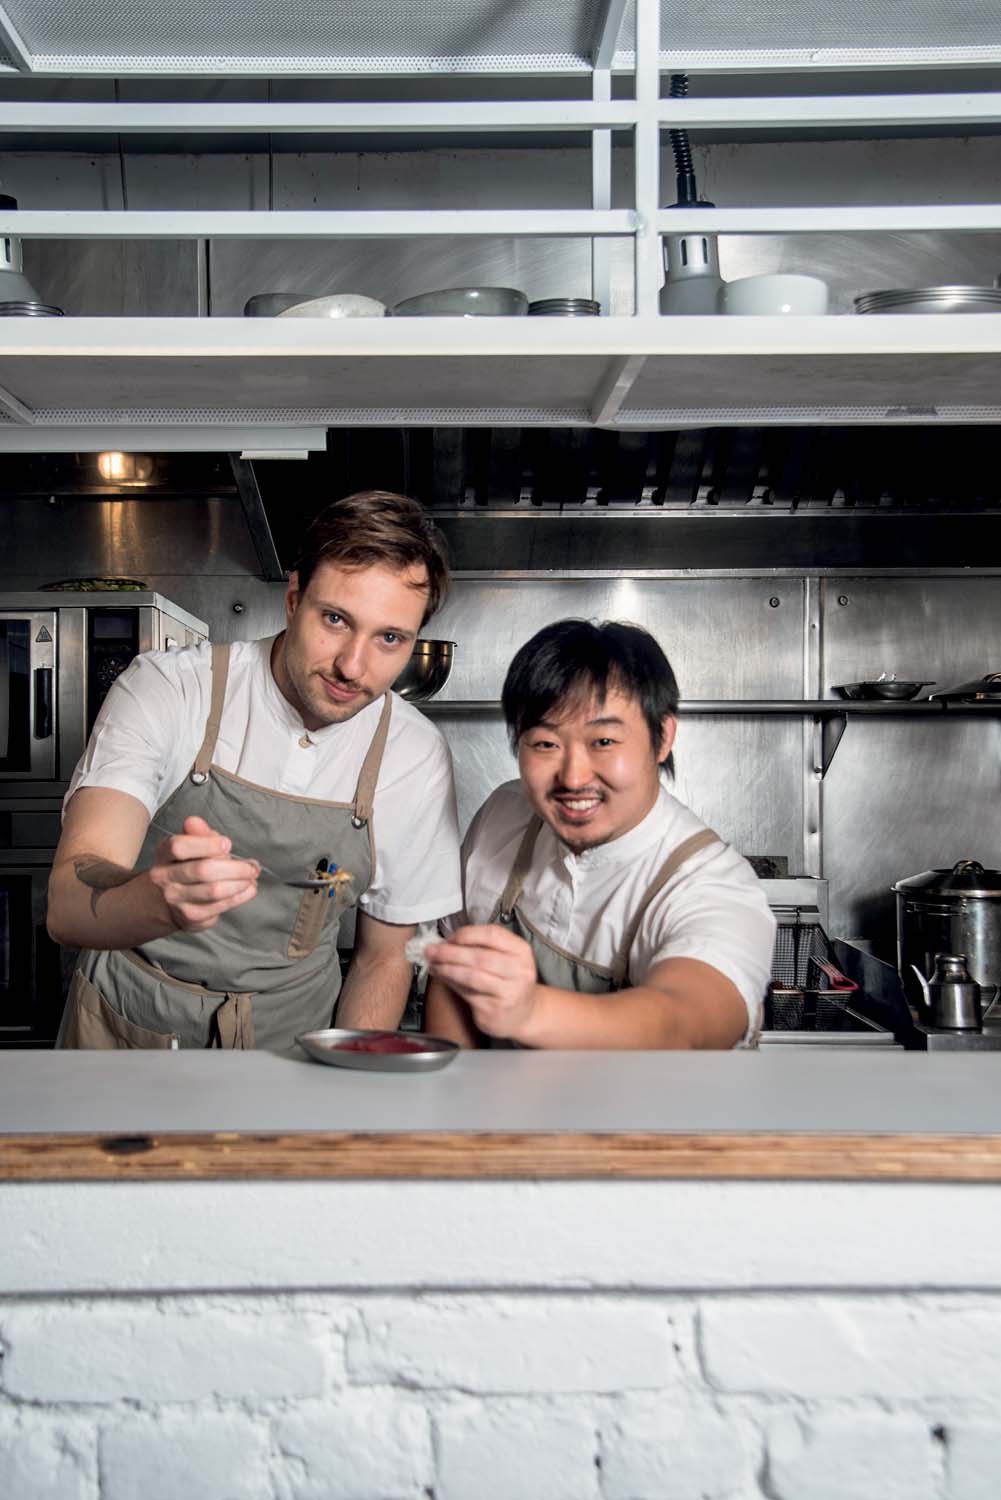 Dois chefs de camiseta branca coberta por avental cinza segurando colheres atrás de balcão em cozinha de restaurante